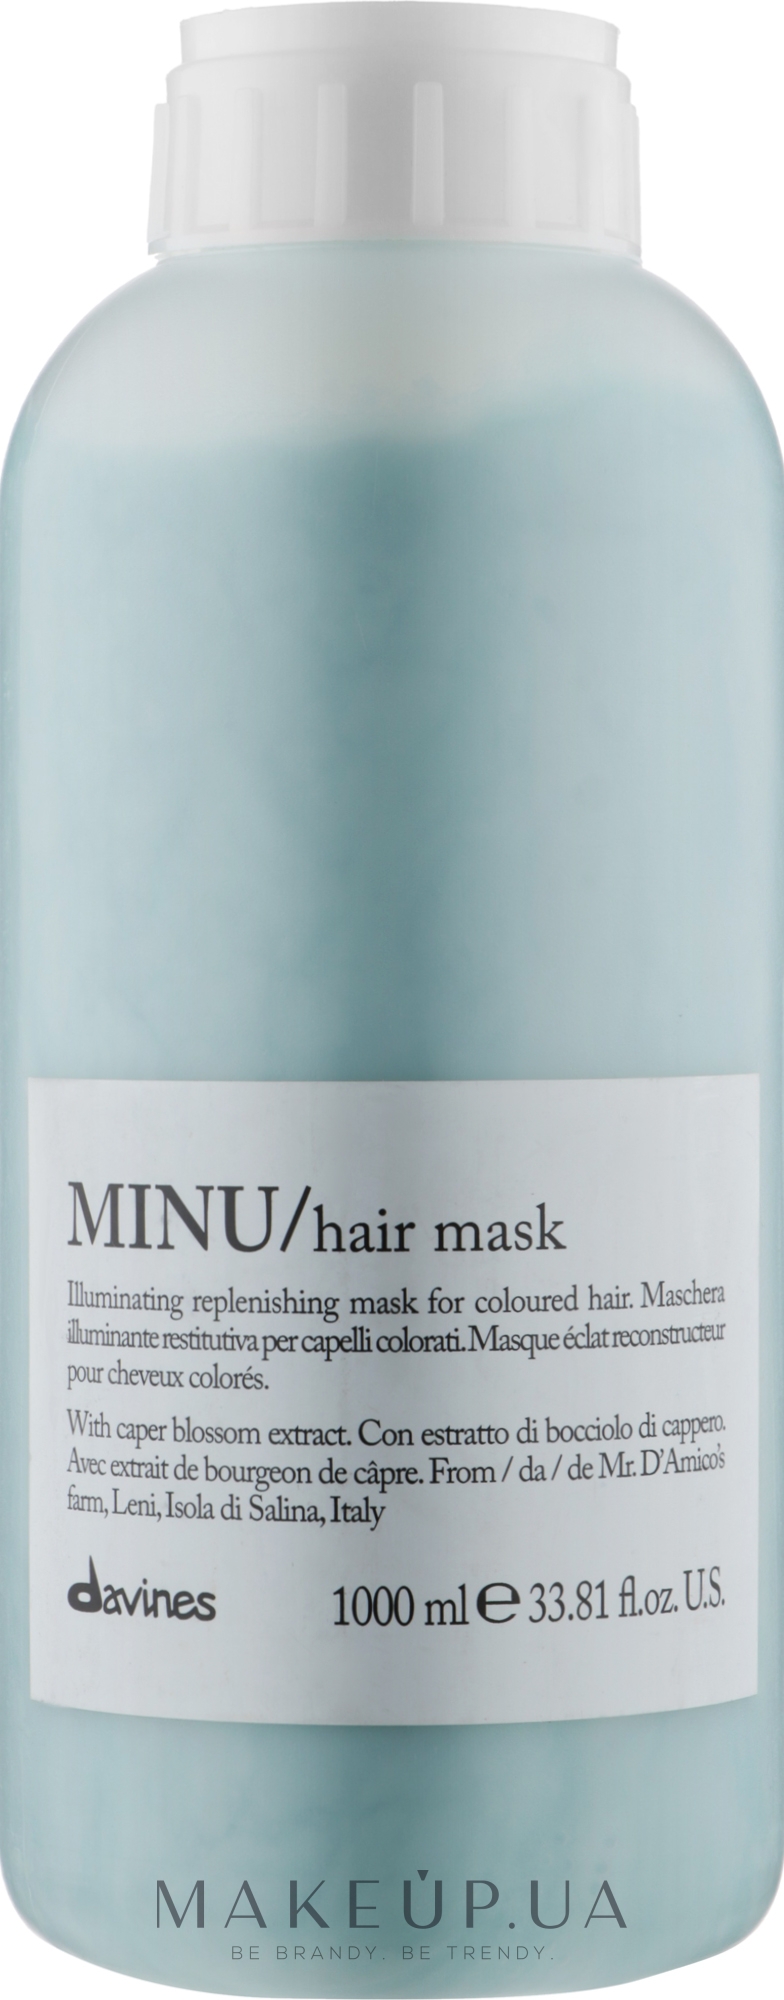 Маска для придания блеска и защиты цвета волос - Davines Minu Mask  — фото 1000ml